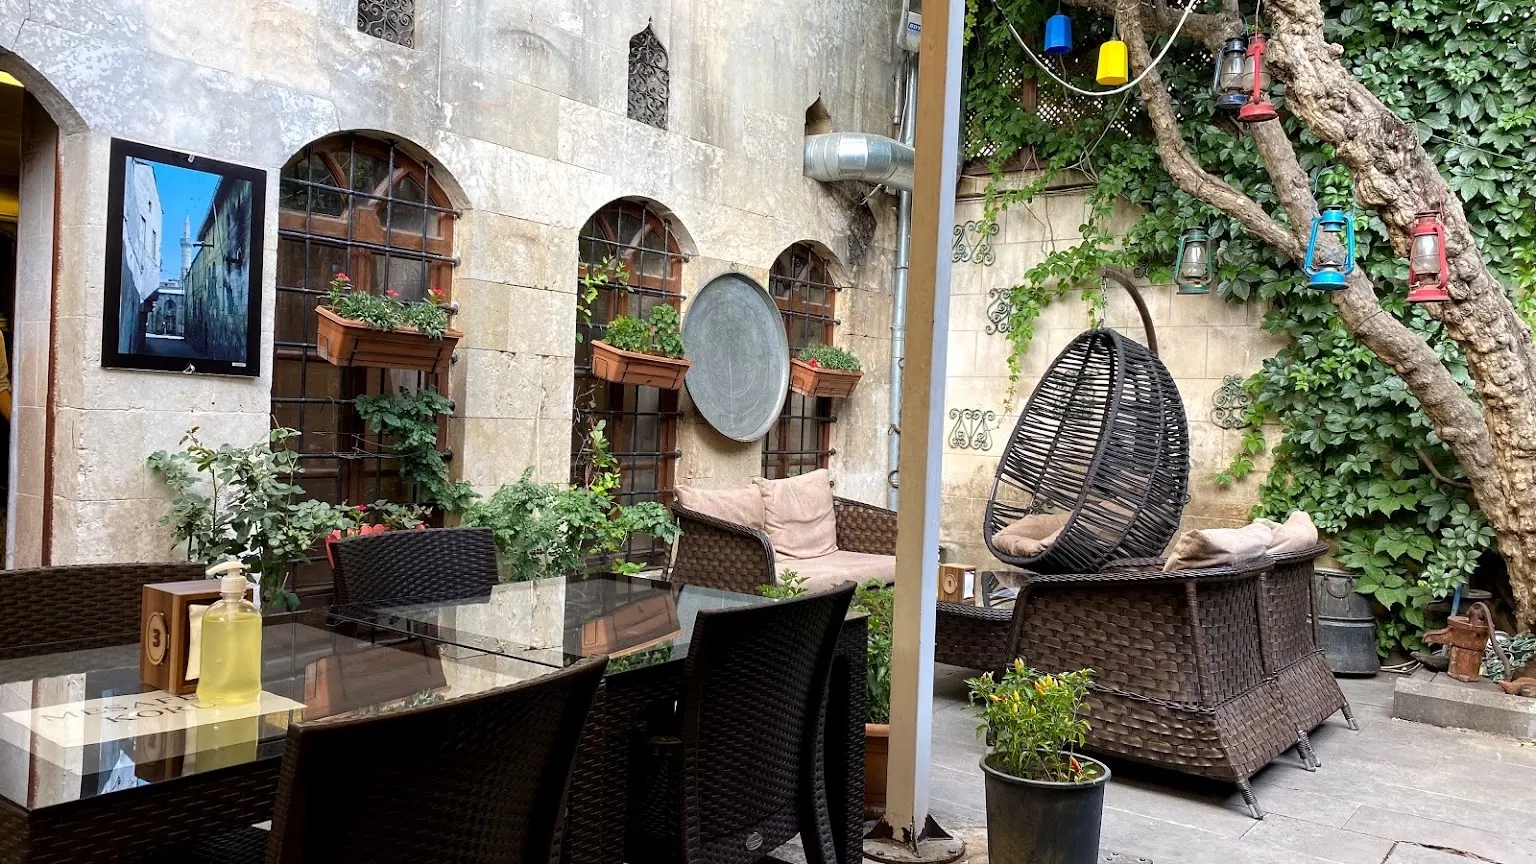 إذا كنت تبحث عن أجواء شبيهة بالبيت الدمشقي أو العربي القديم فإن مطعم قصر عنتاب سيمنحك سحر المكان ومتعة التذوق